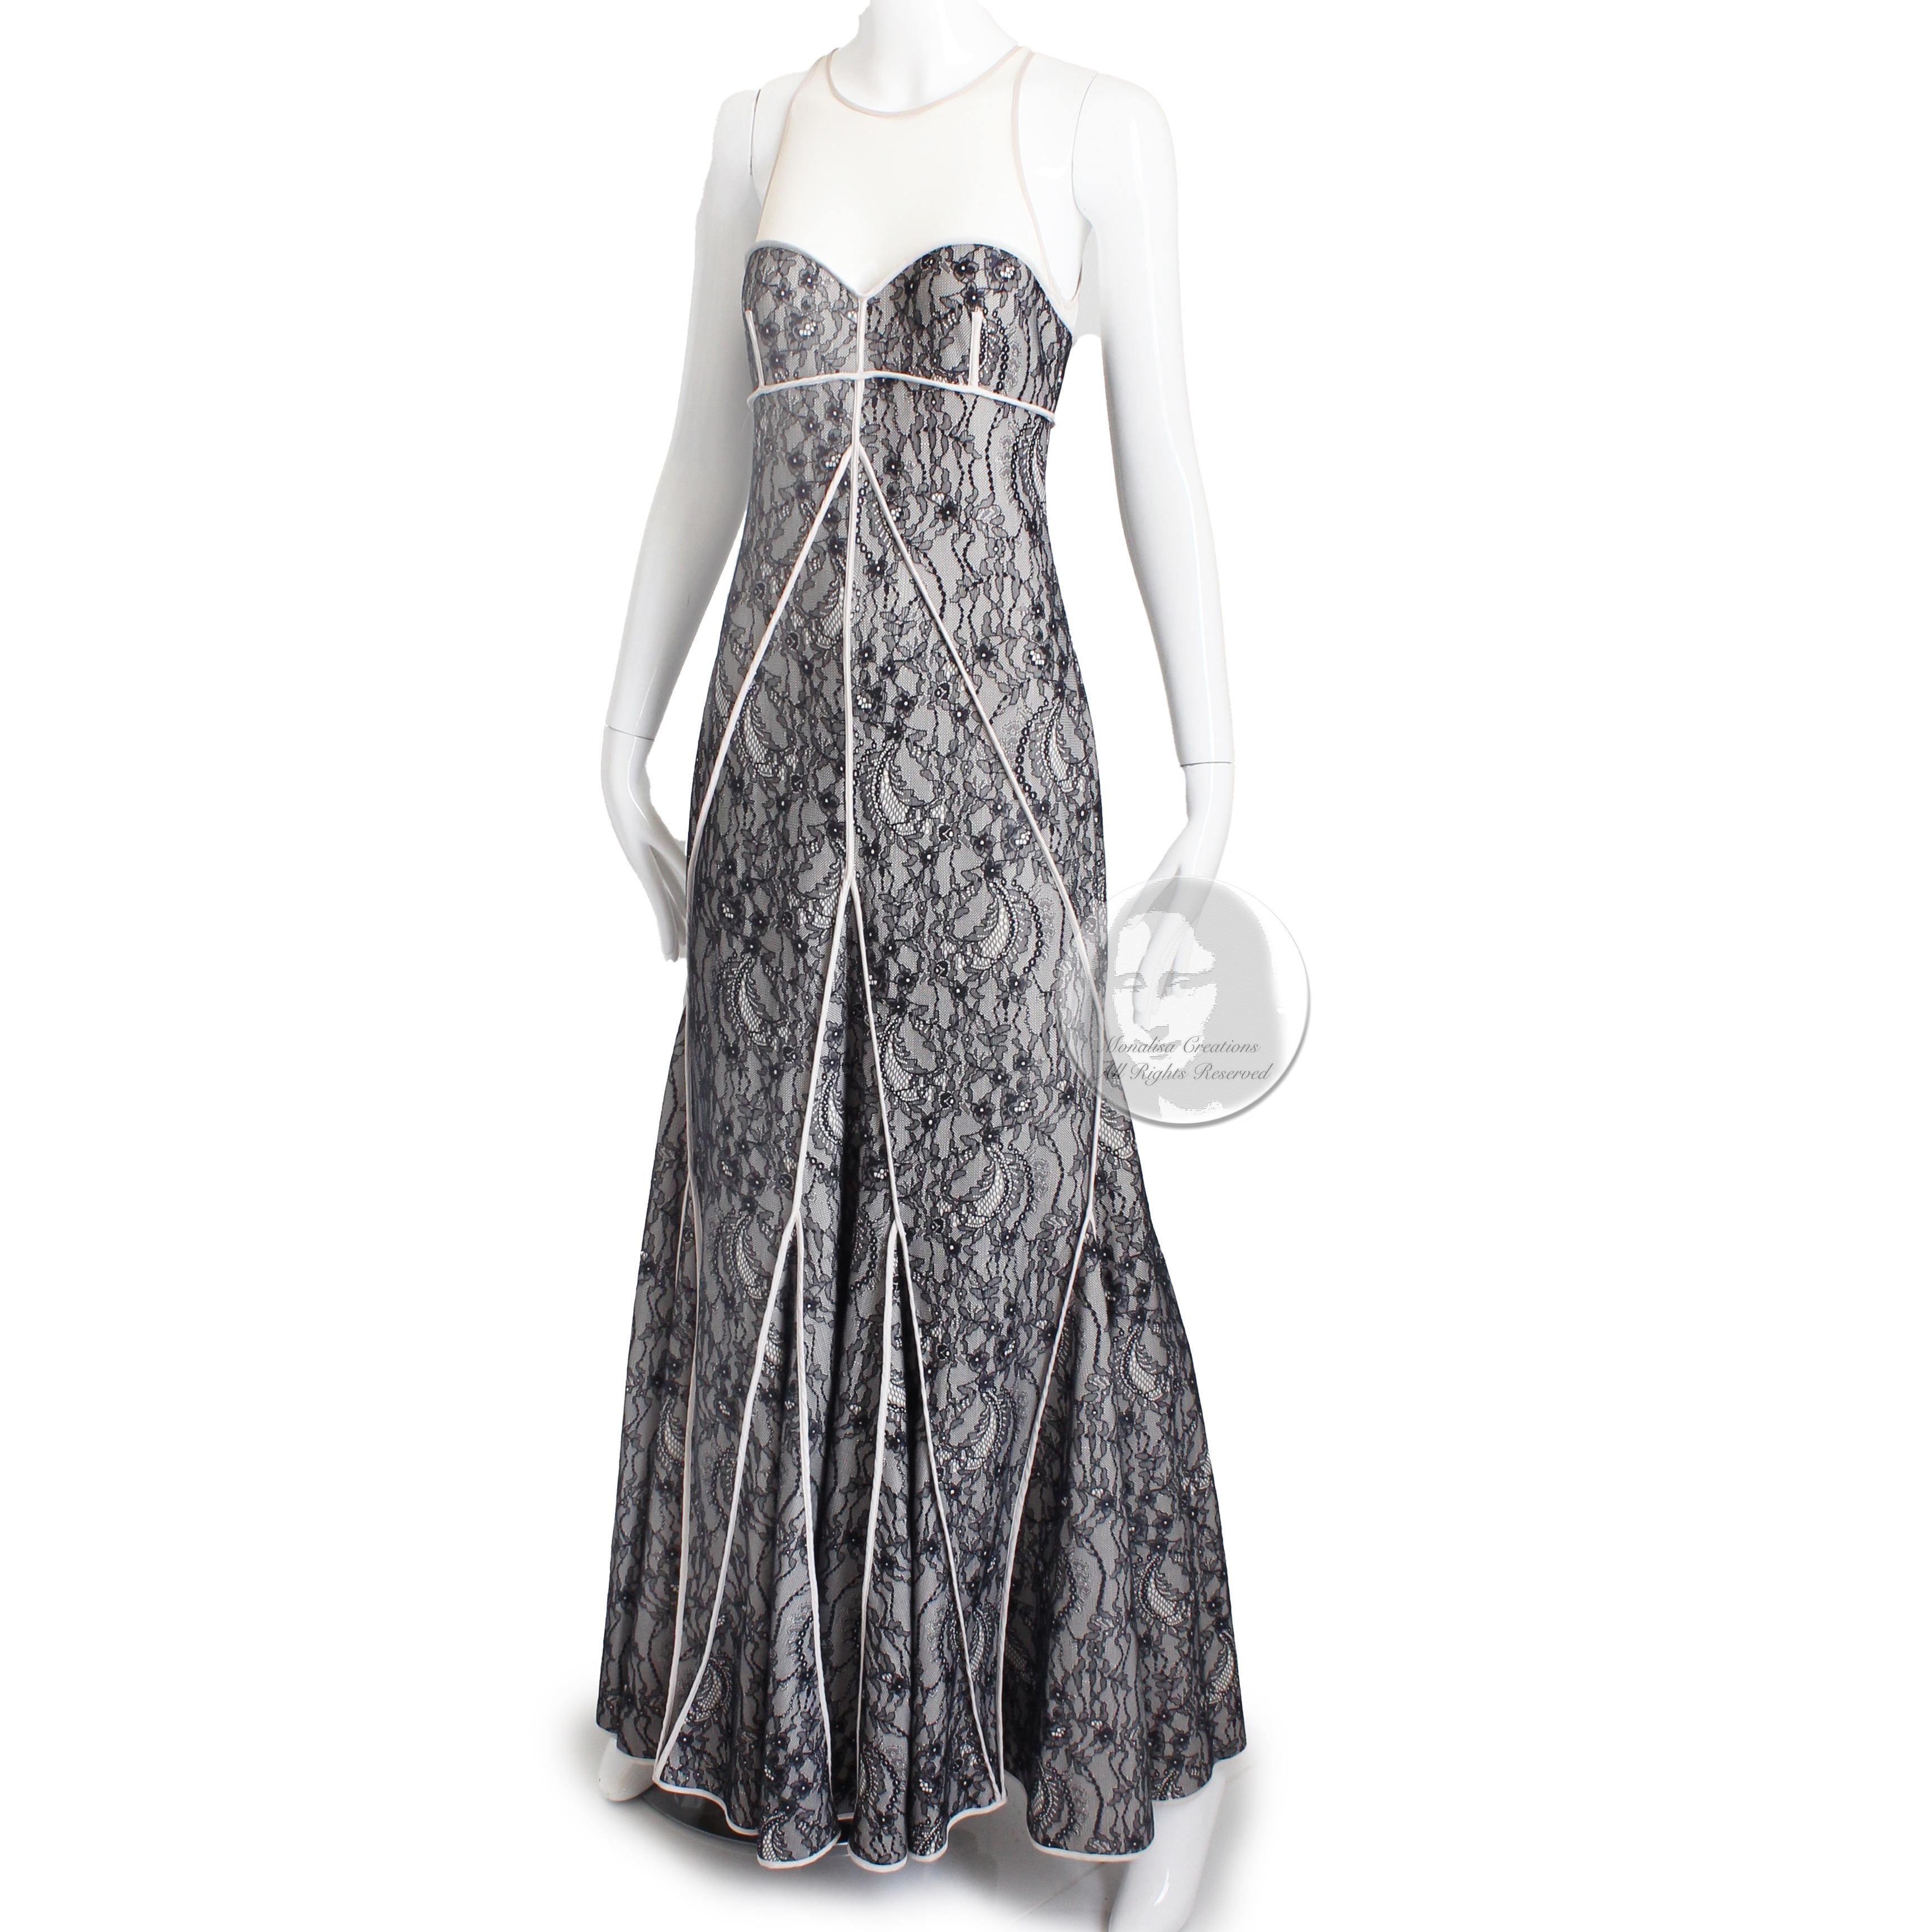  Halston Heritage Evening Gown Long Dress Fit & Flare Illusion Lace NWT NOS Sz M Pour femmes 